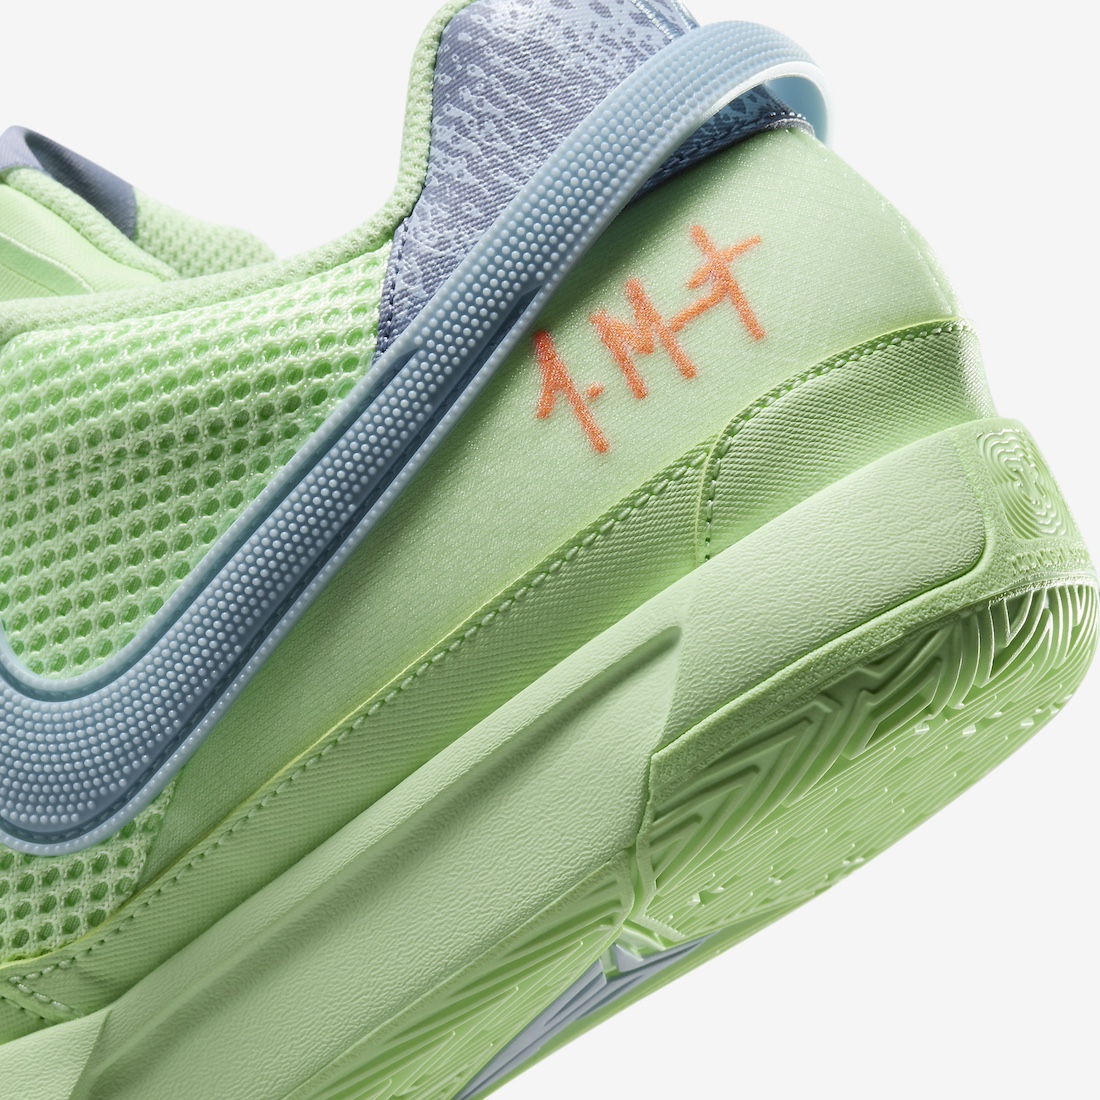 Nike Ja 1 Bright Mandarin Vapor Green FQ4796 800 Release Date 7